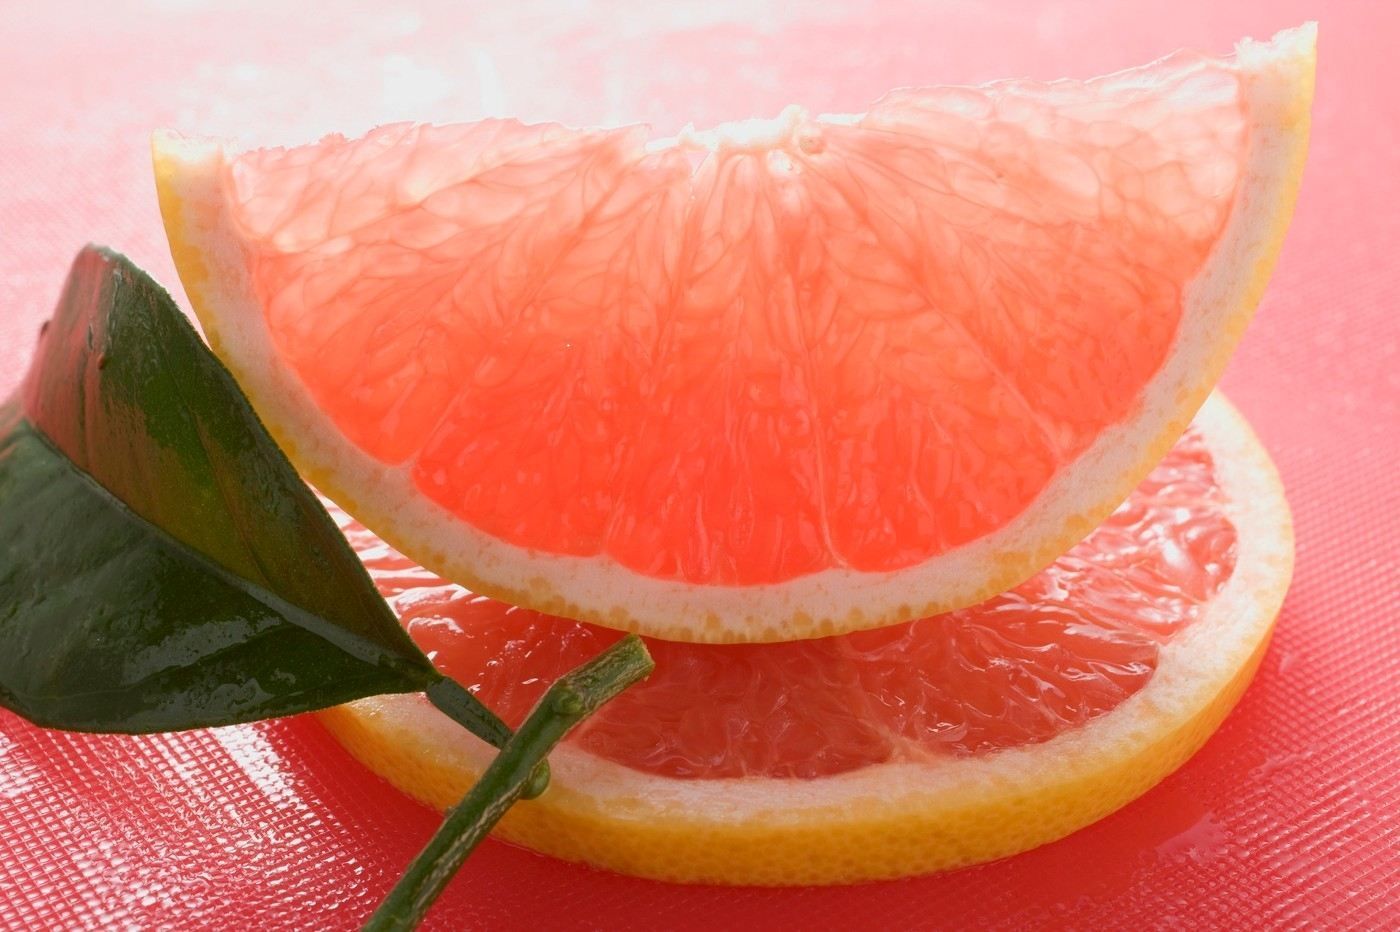 Citrus - grapefruit